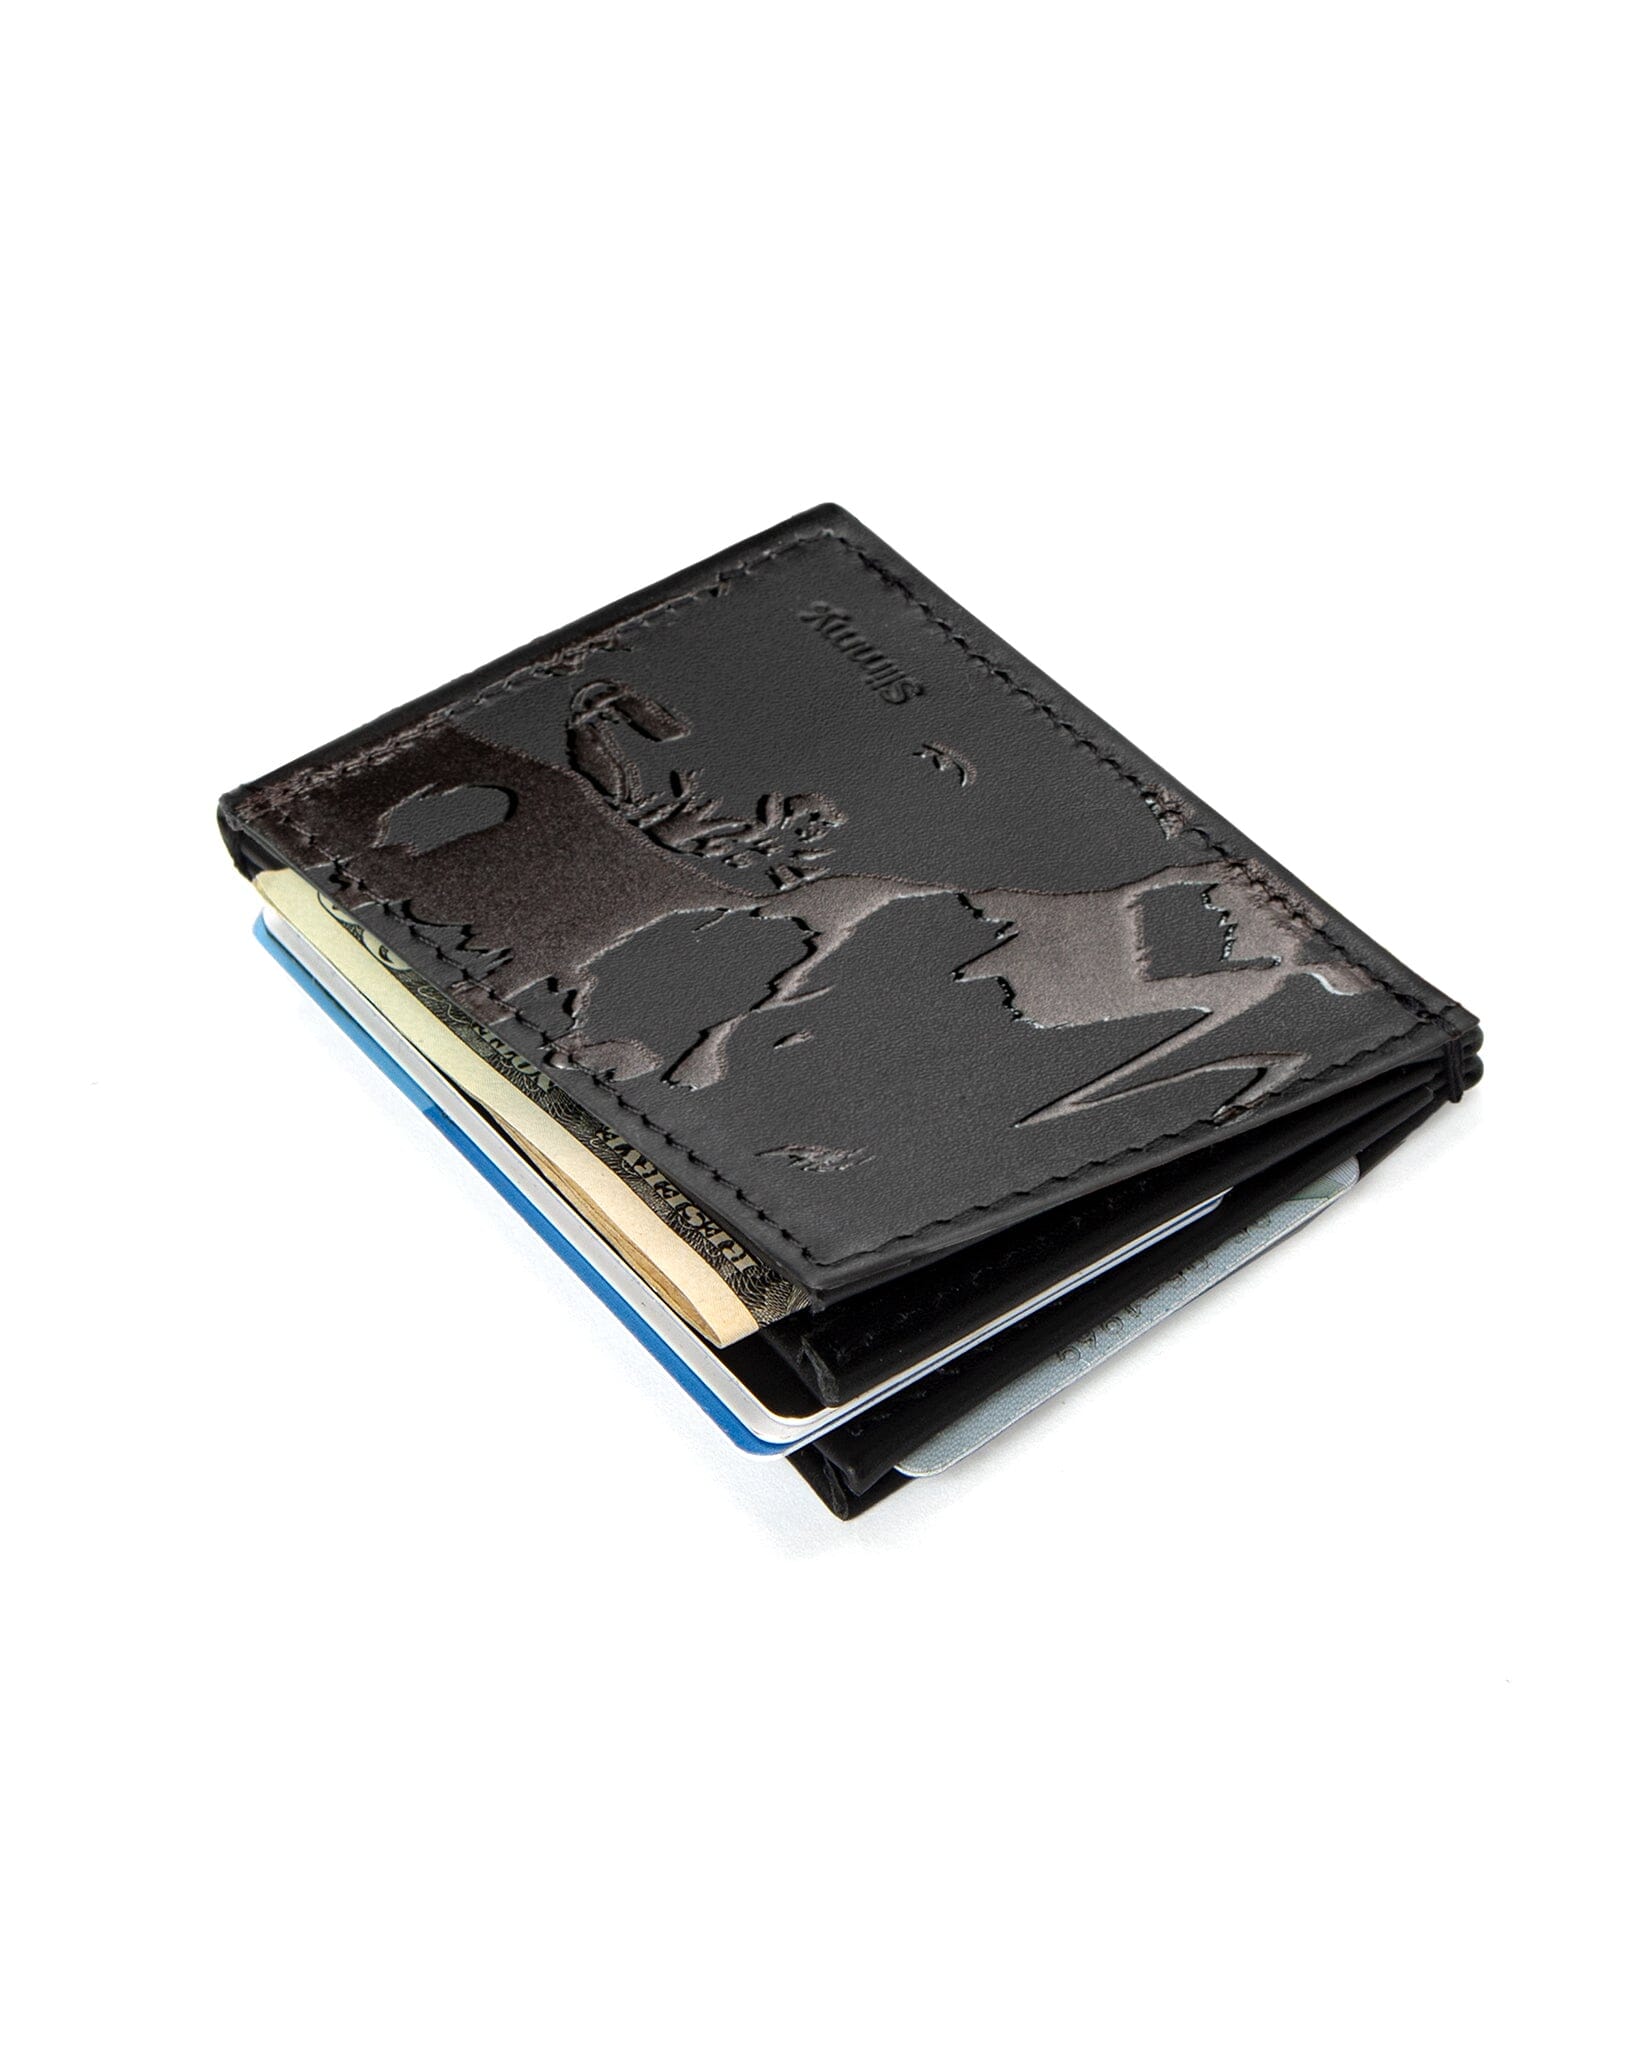 OG 3-Pocket Wallet (76mm) - Gorilla Warfare by Aawful Aaron Wallet Slimmy Black/AA Art  